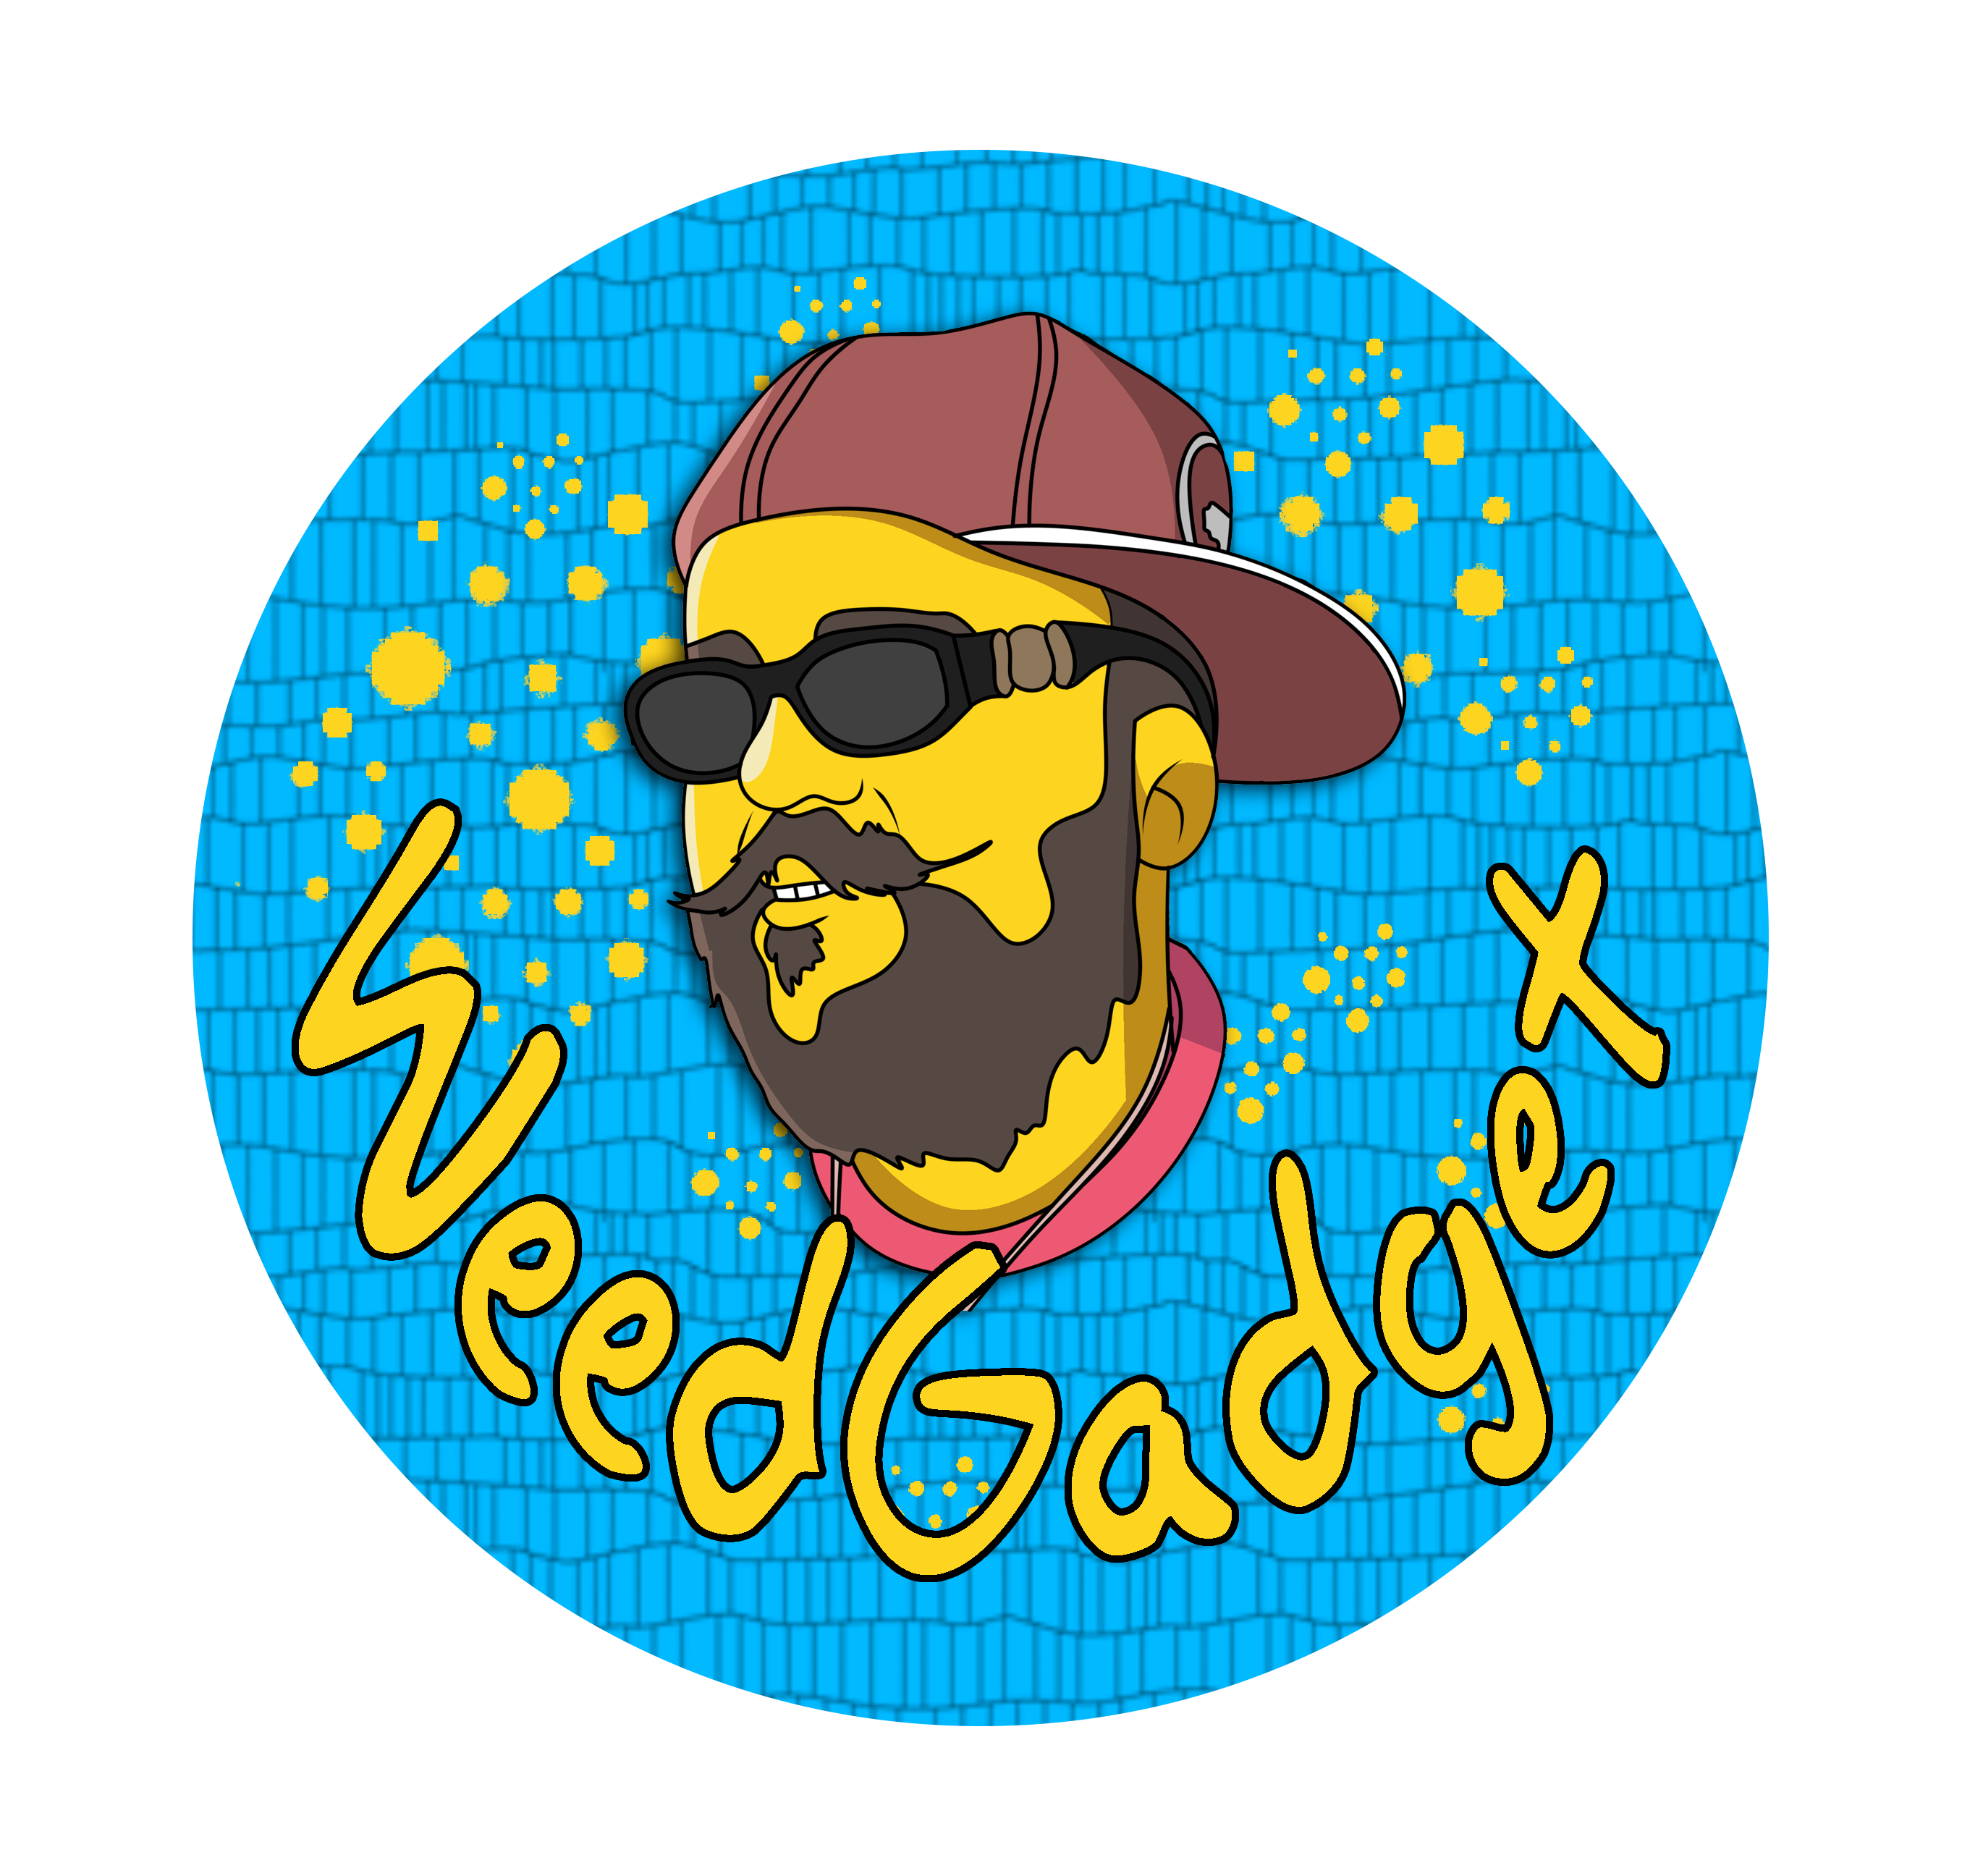 WEEDGADGET– Weedgadget